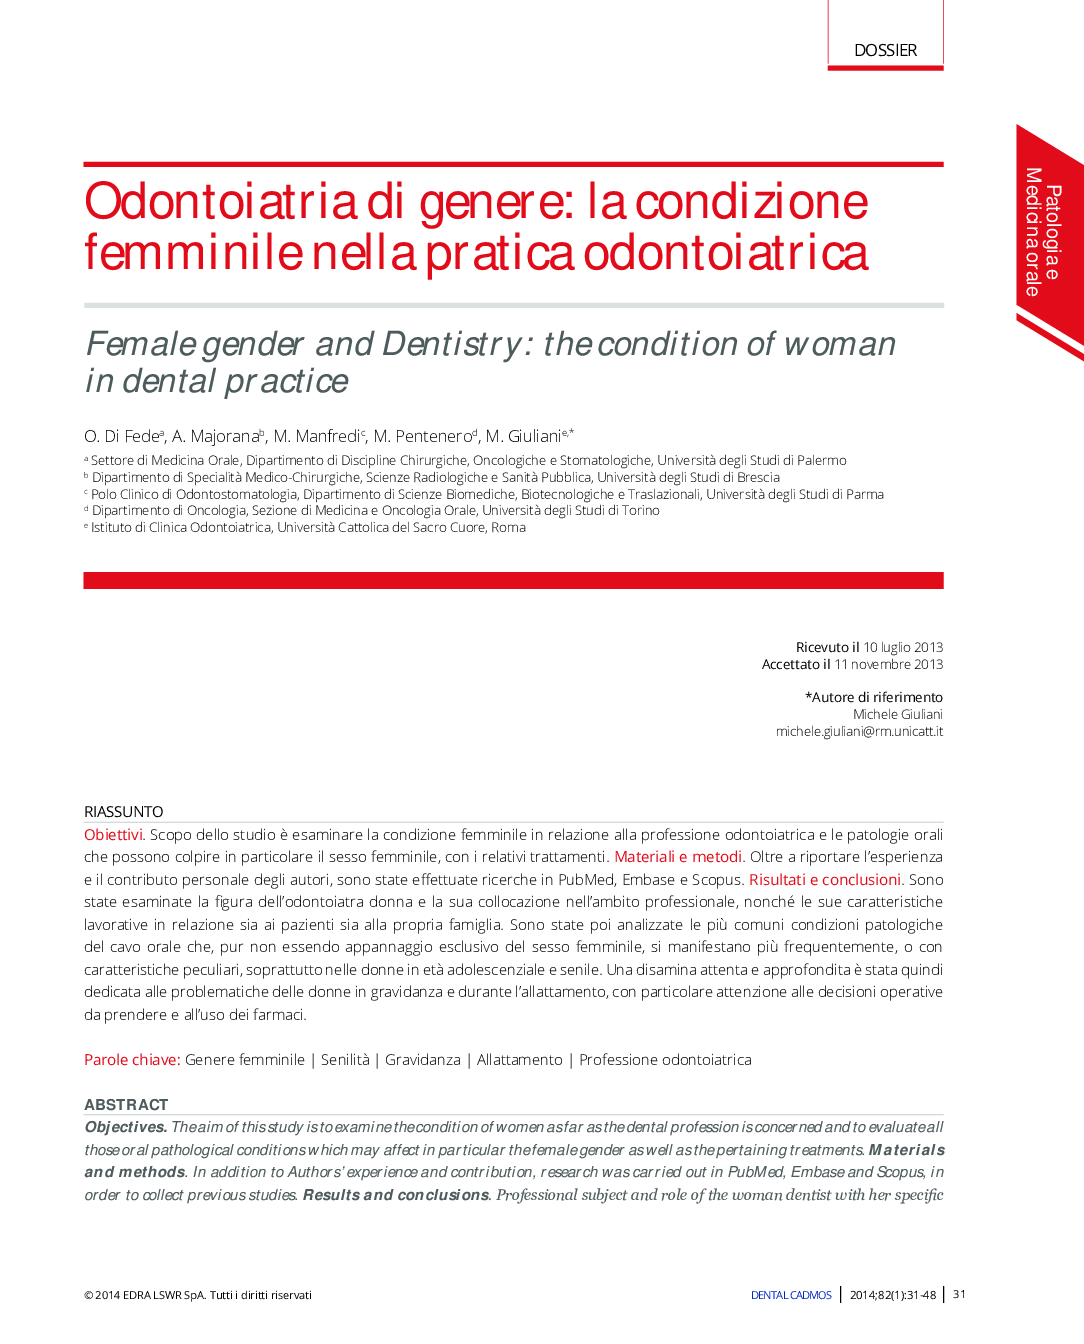 Odontoiatria di genere: la condizione femminile nella pratica odontoiatrica